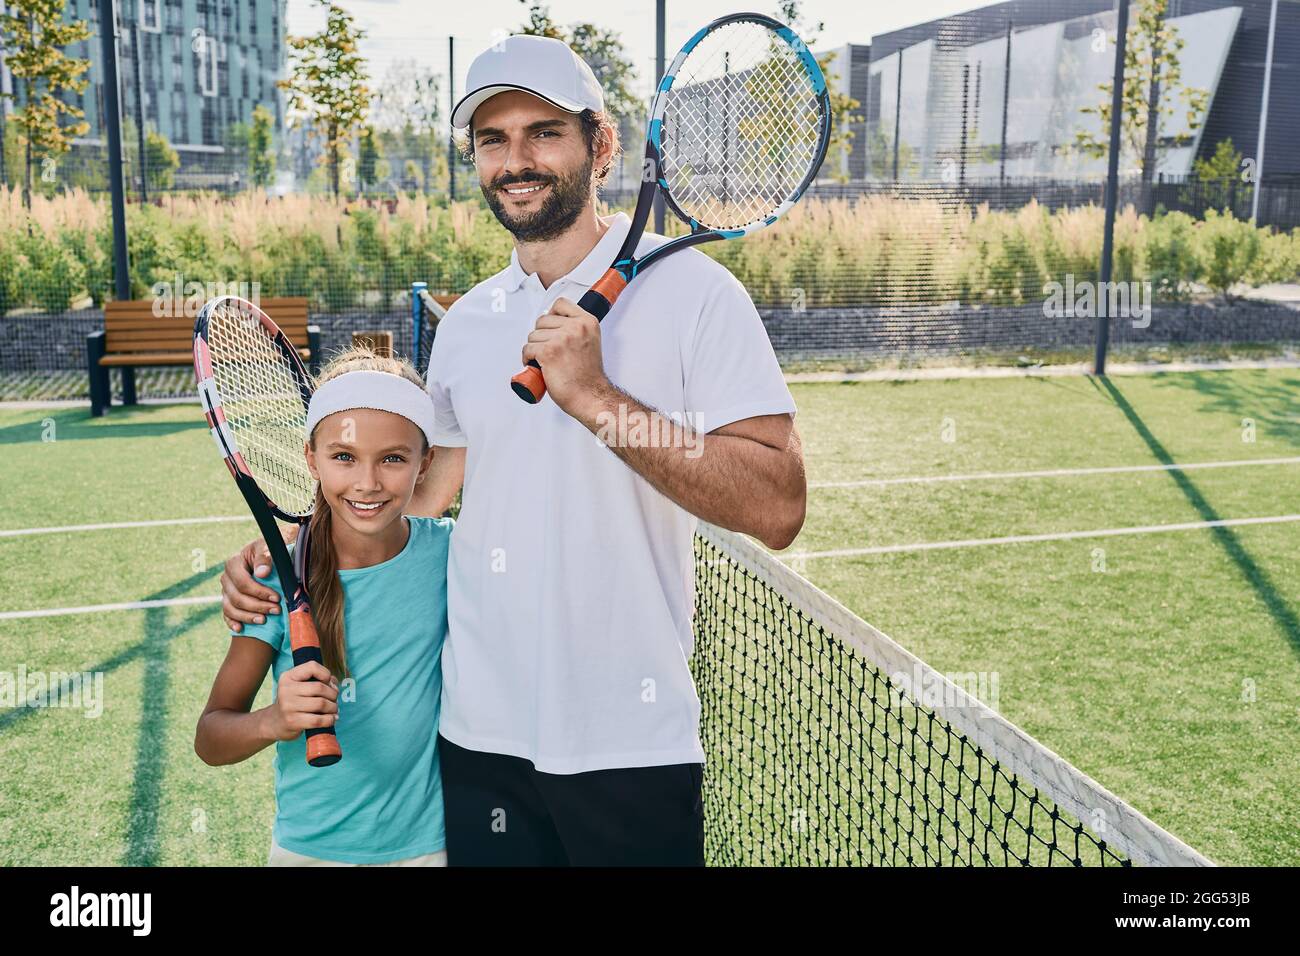 Retrato del jugador de tenis padre e hija pequeña en ropa deportiva con raquetas en las manos en la cancha de tenis al aire libre cerca de la red. familia deportiva jugando tenni Foto de stock